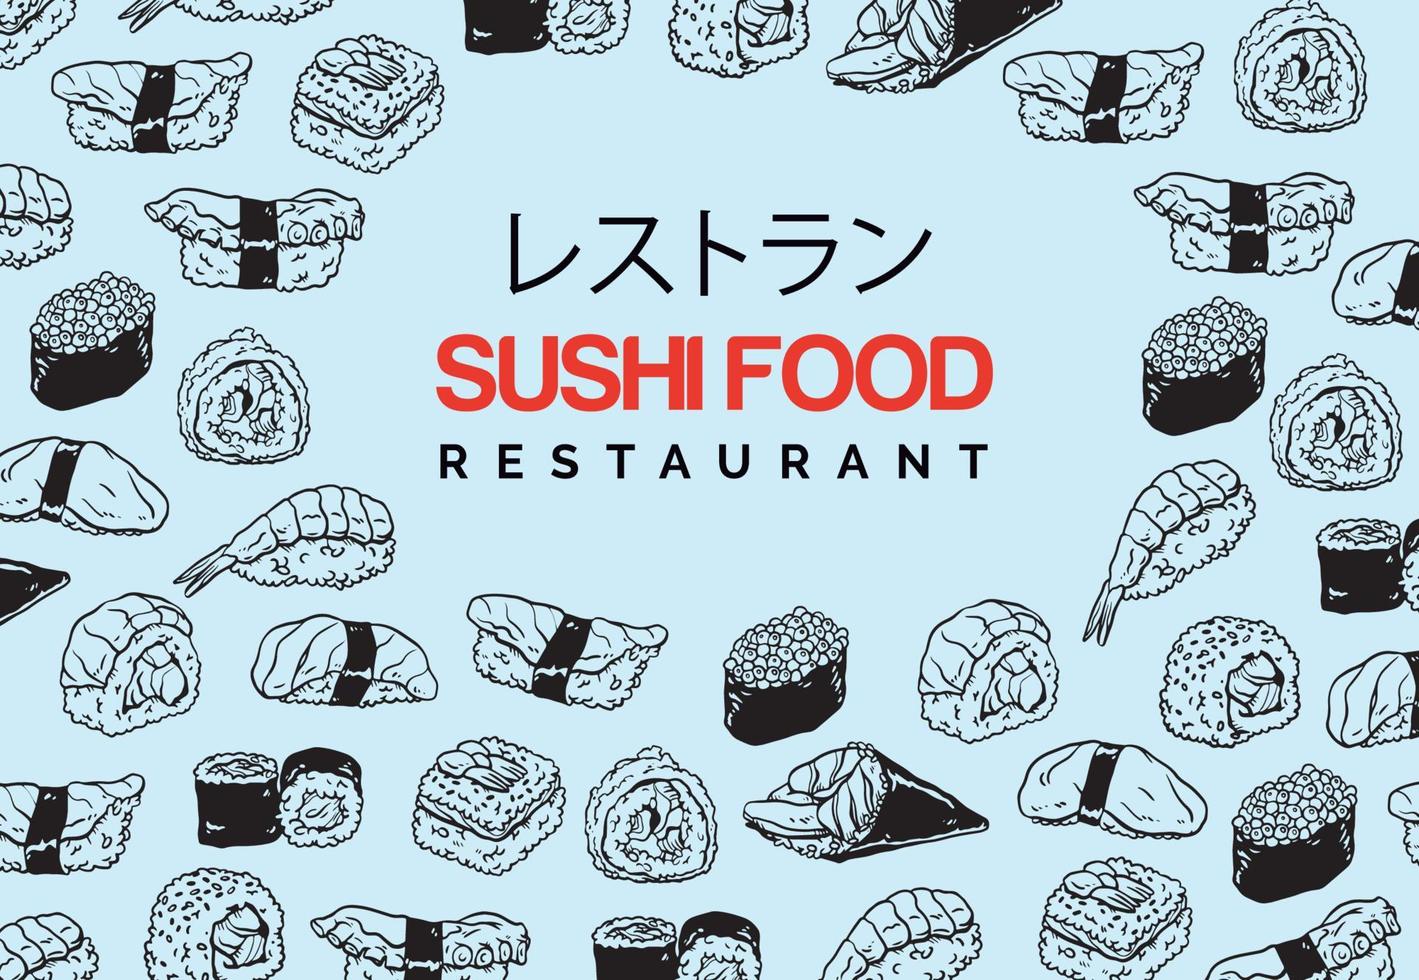 banner för restaurang med handritade sushikrabbor vektor